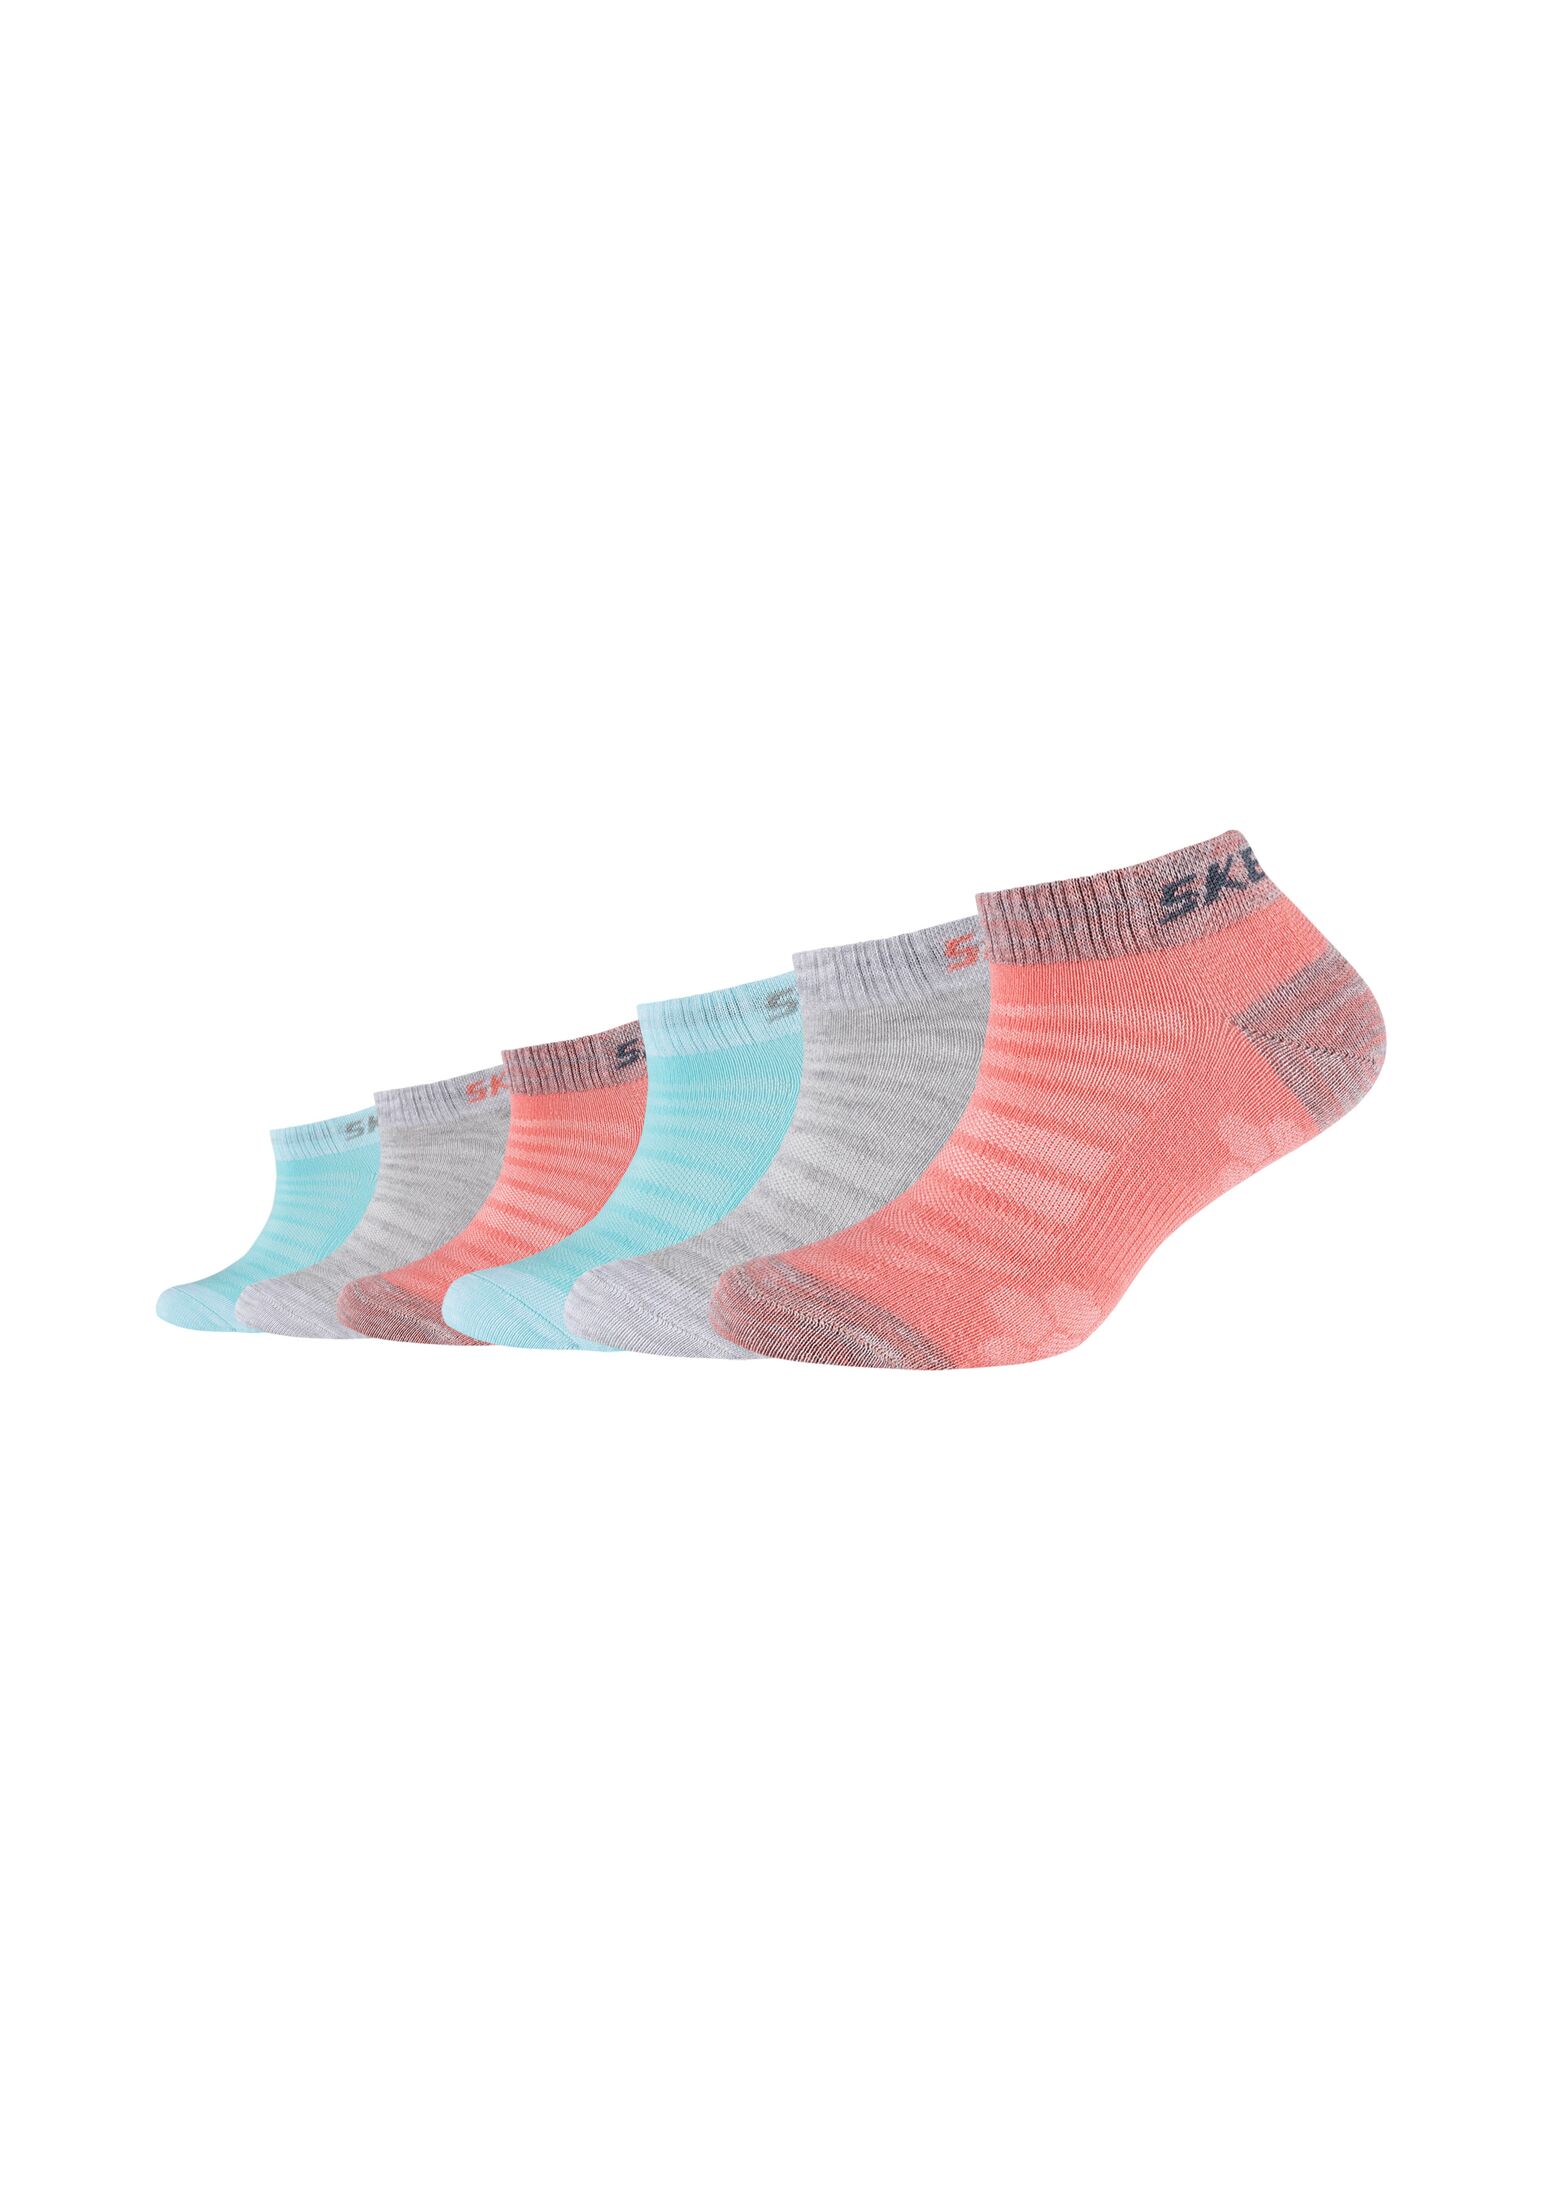 Носки Skechers Sneaker 6 шт mesh ventilation, цвет flamingo